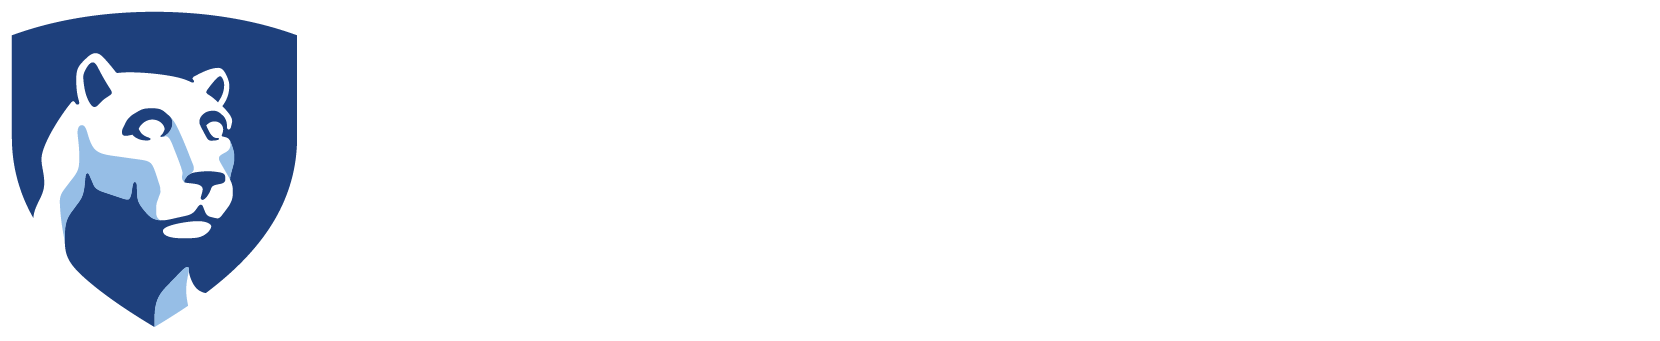 Penn State Strategic Communications Mark